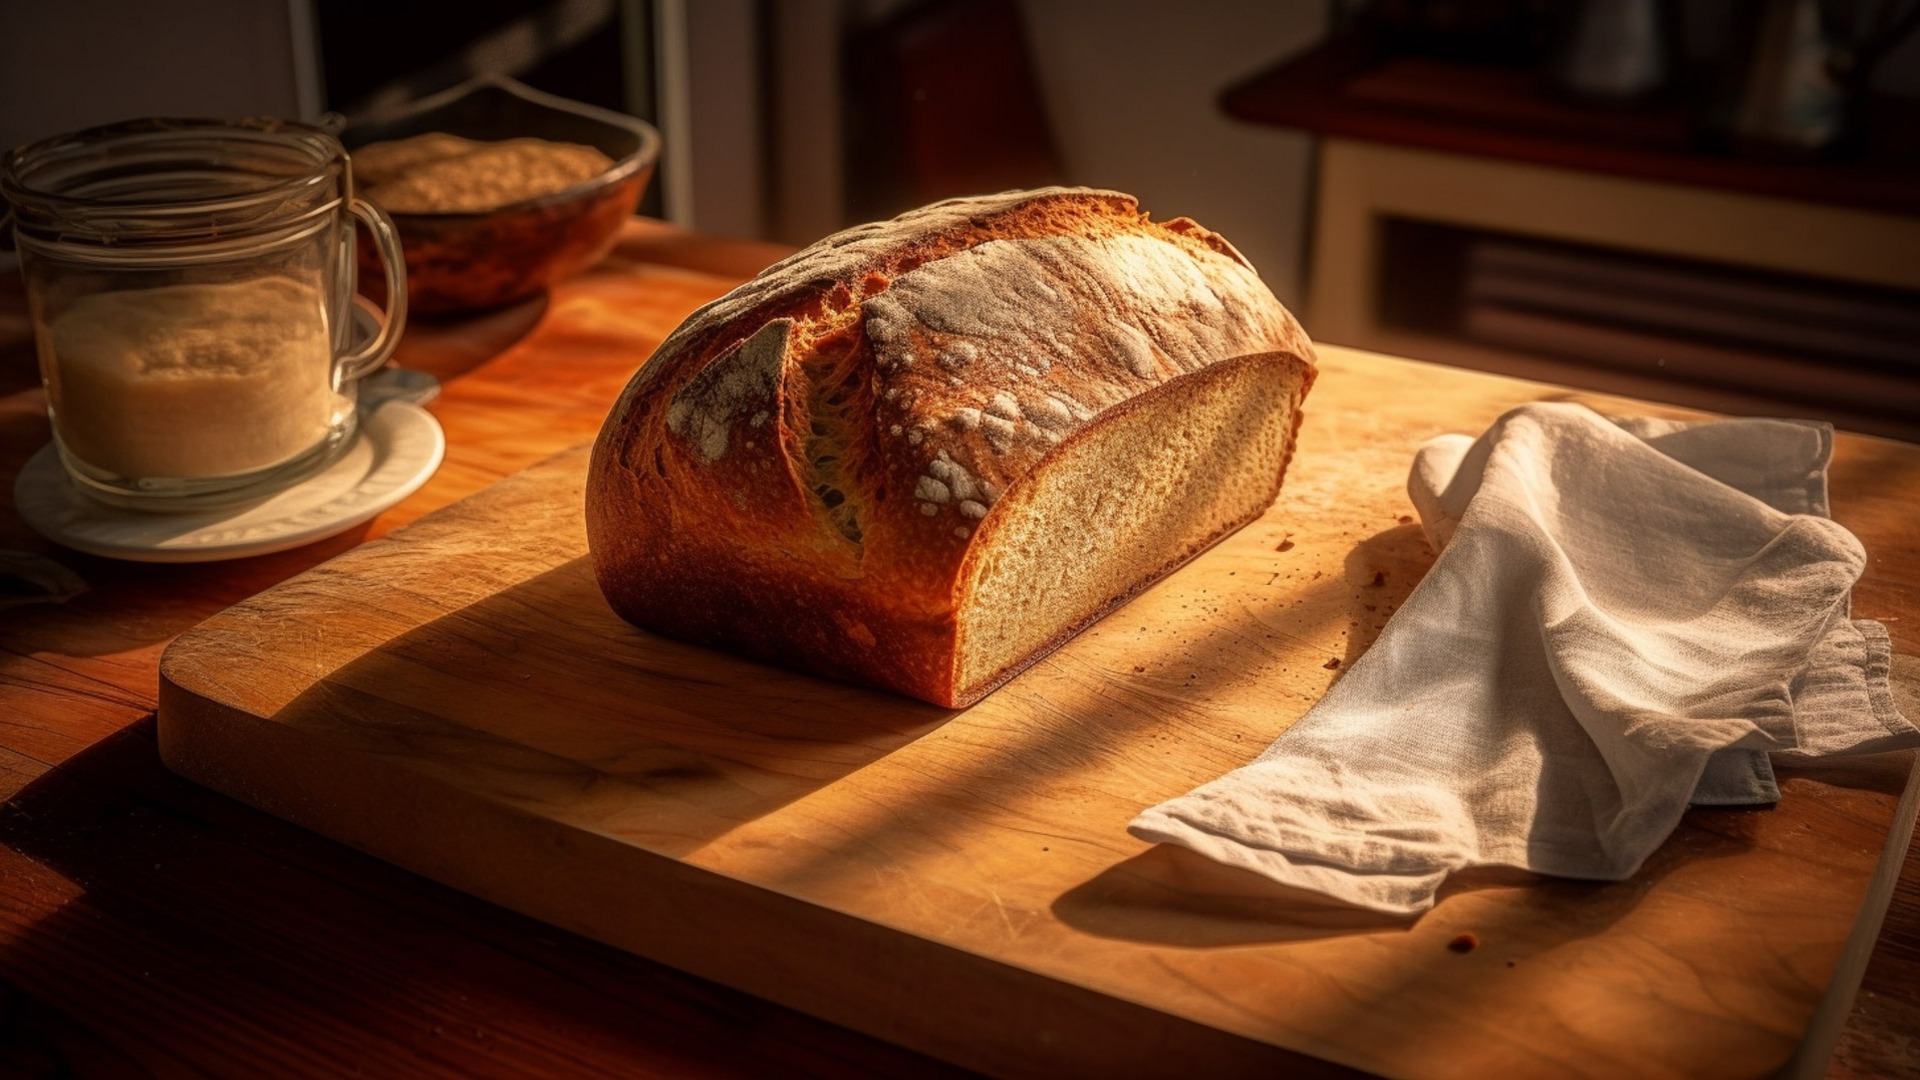 Технолог Андреанова: пакет с отверстиями поможет сохранить хлеб свежим